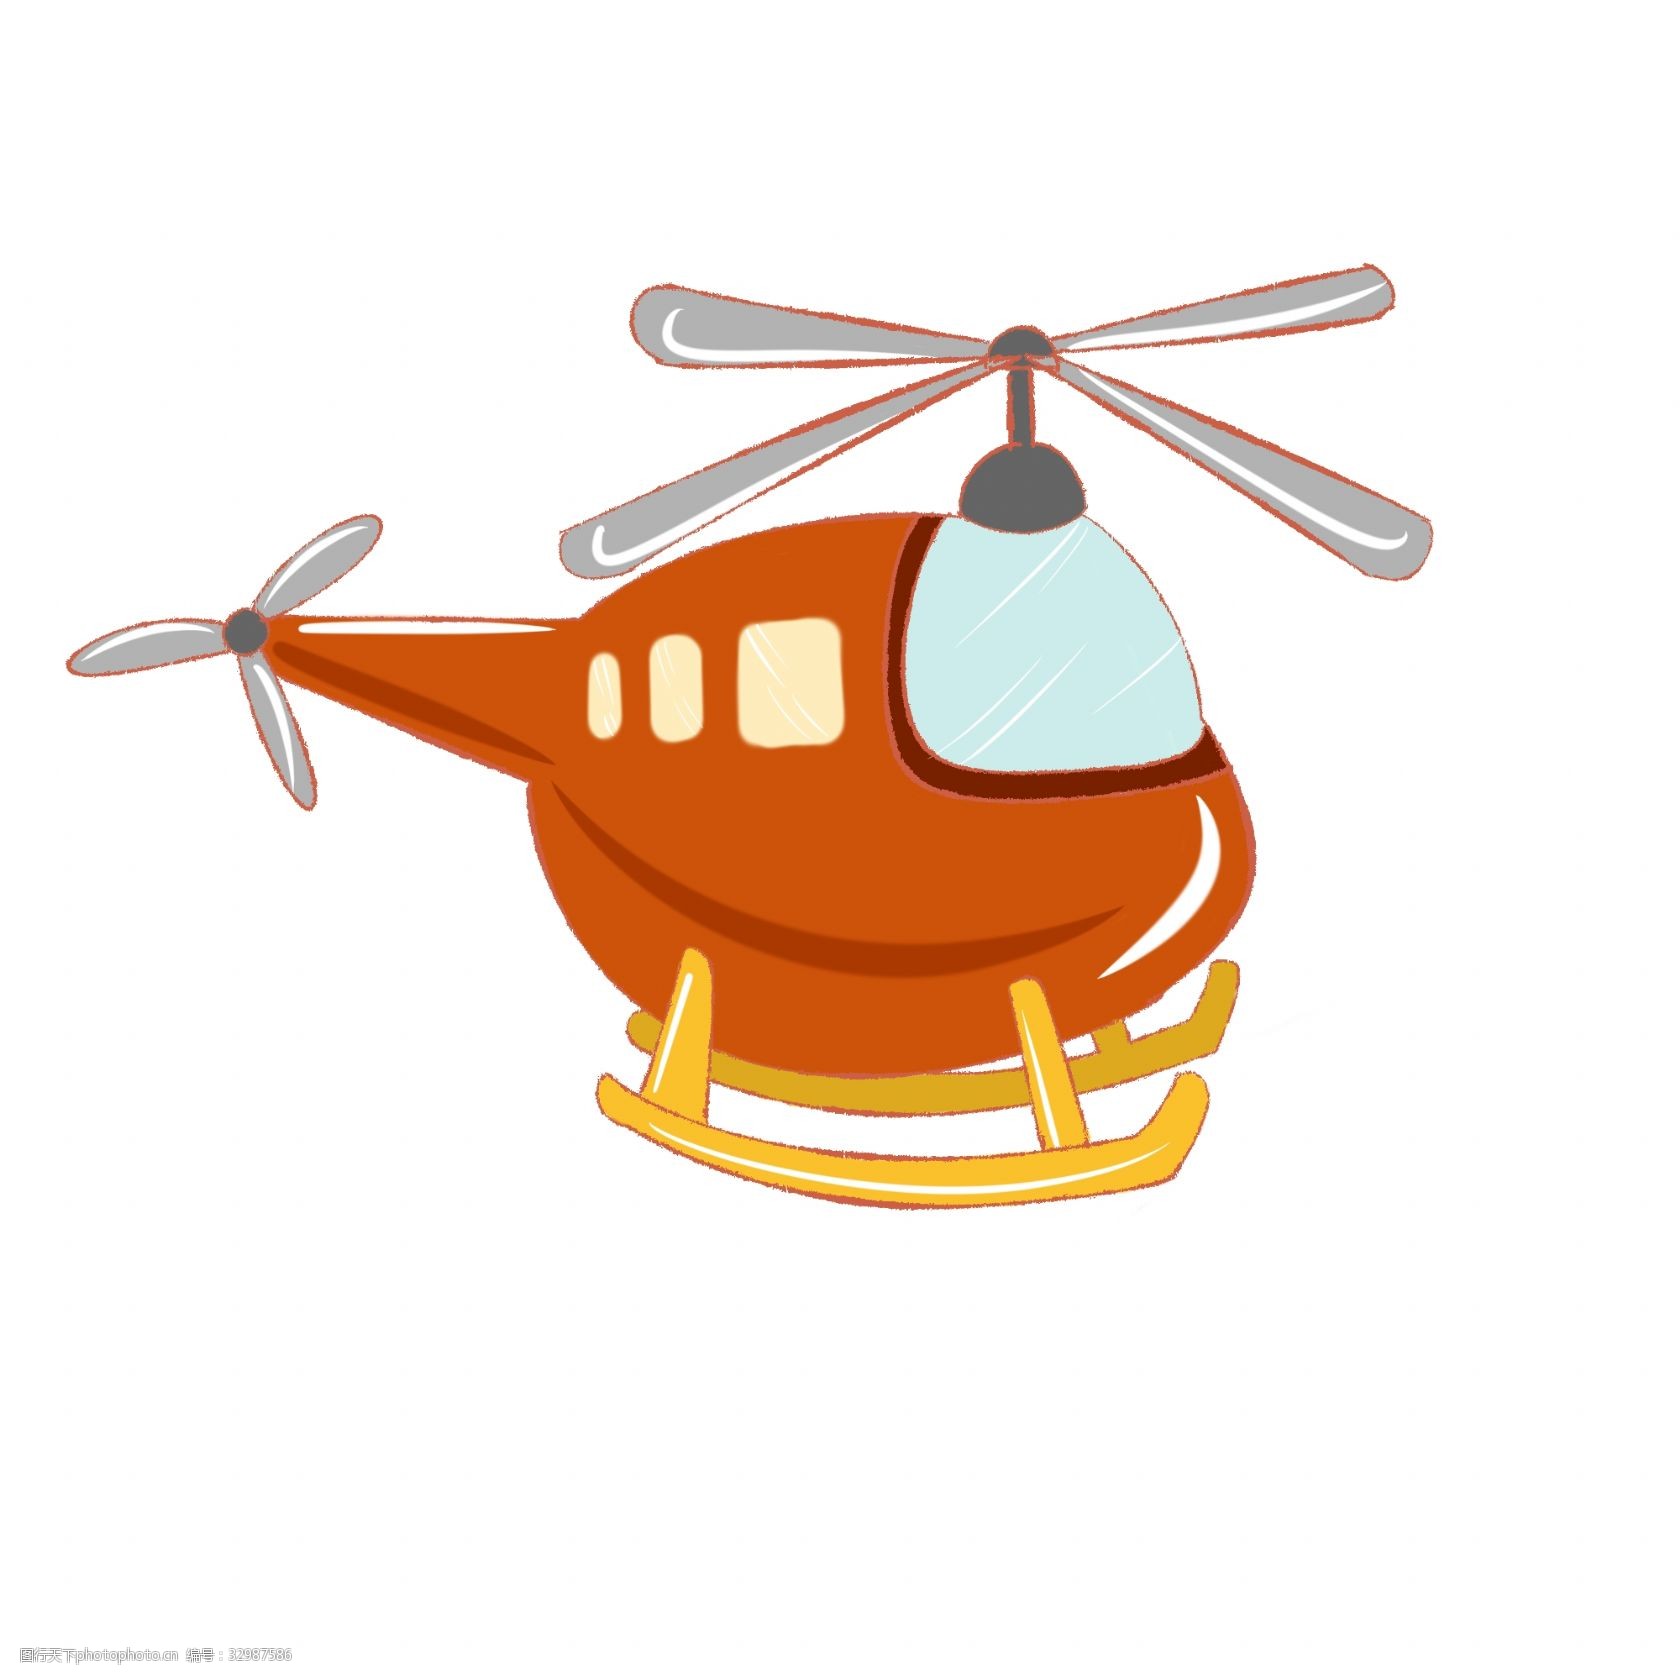 飞机 直升机插图 直升飞机 卡通飞机 橙色直升机 飞机插图 橙色 飞行